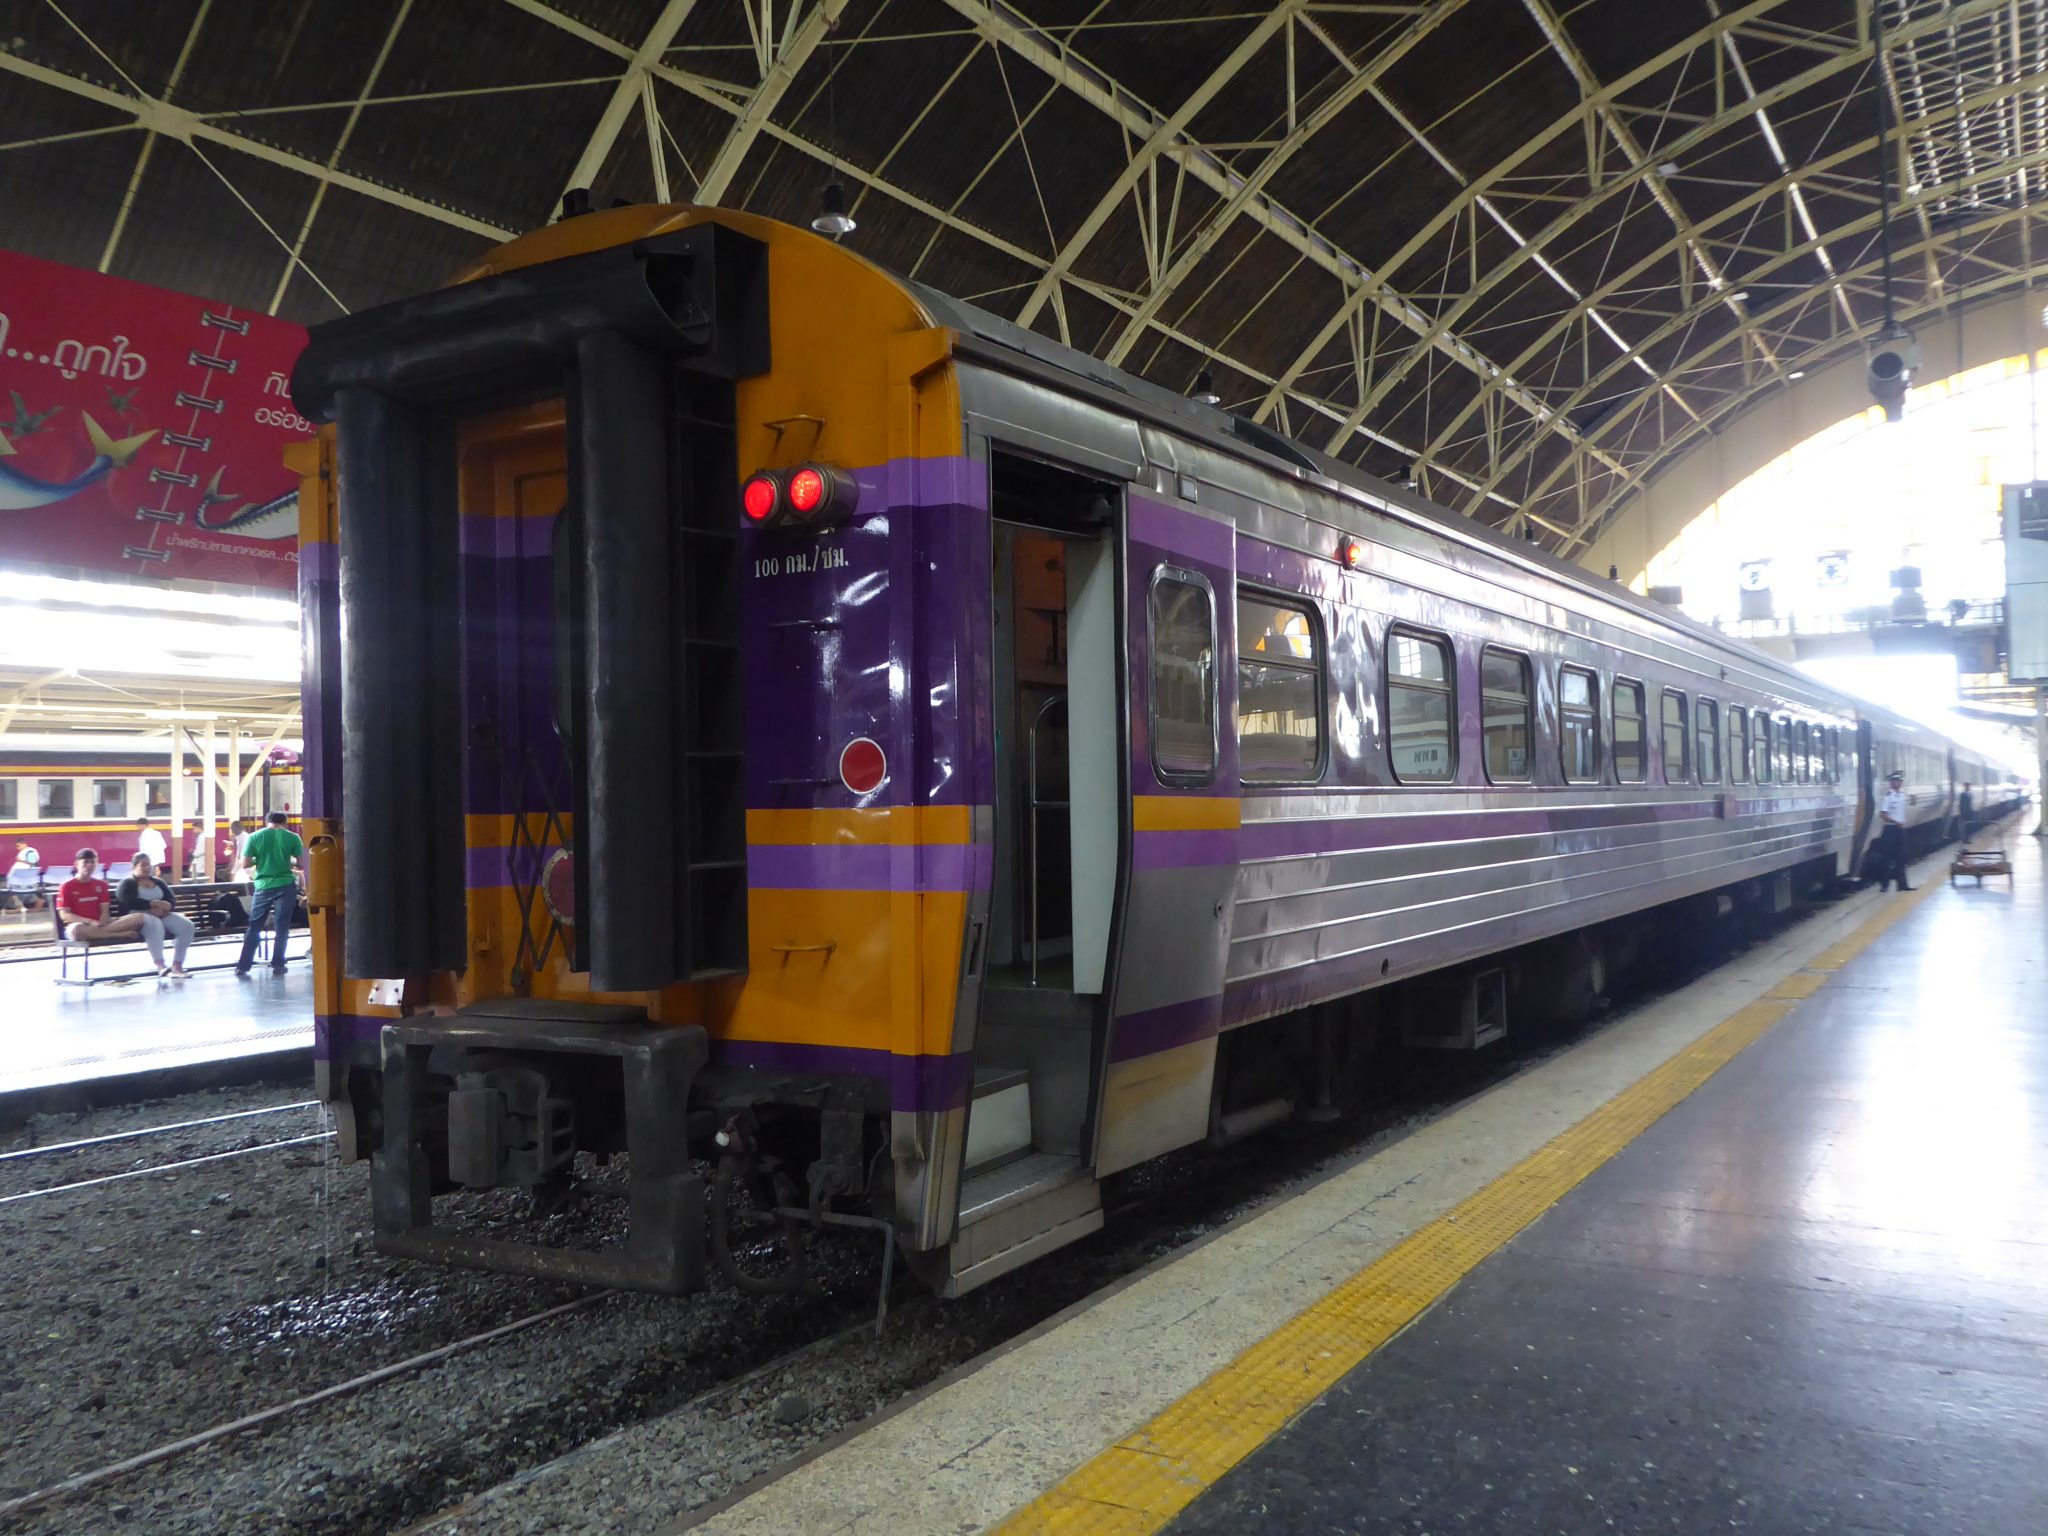 Train Travel in Thailand